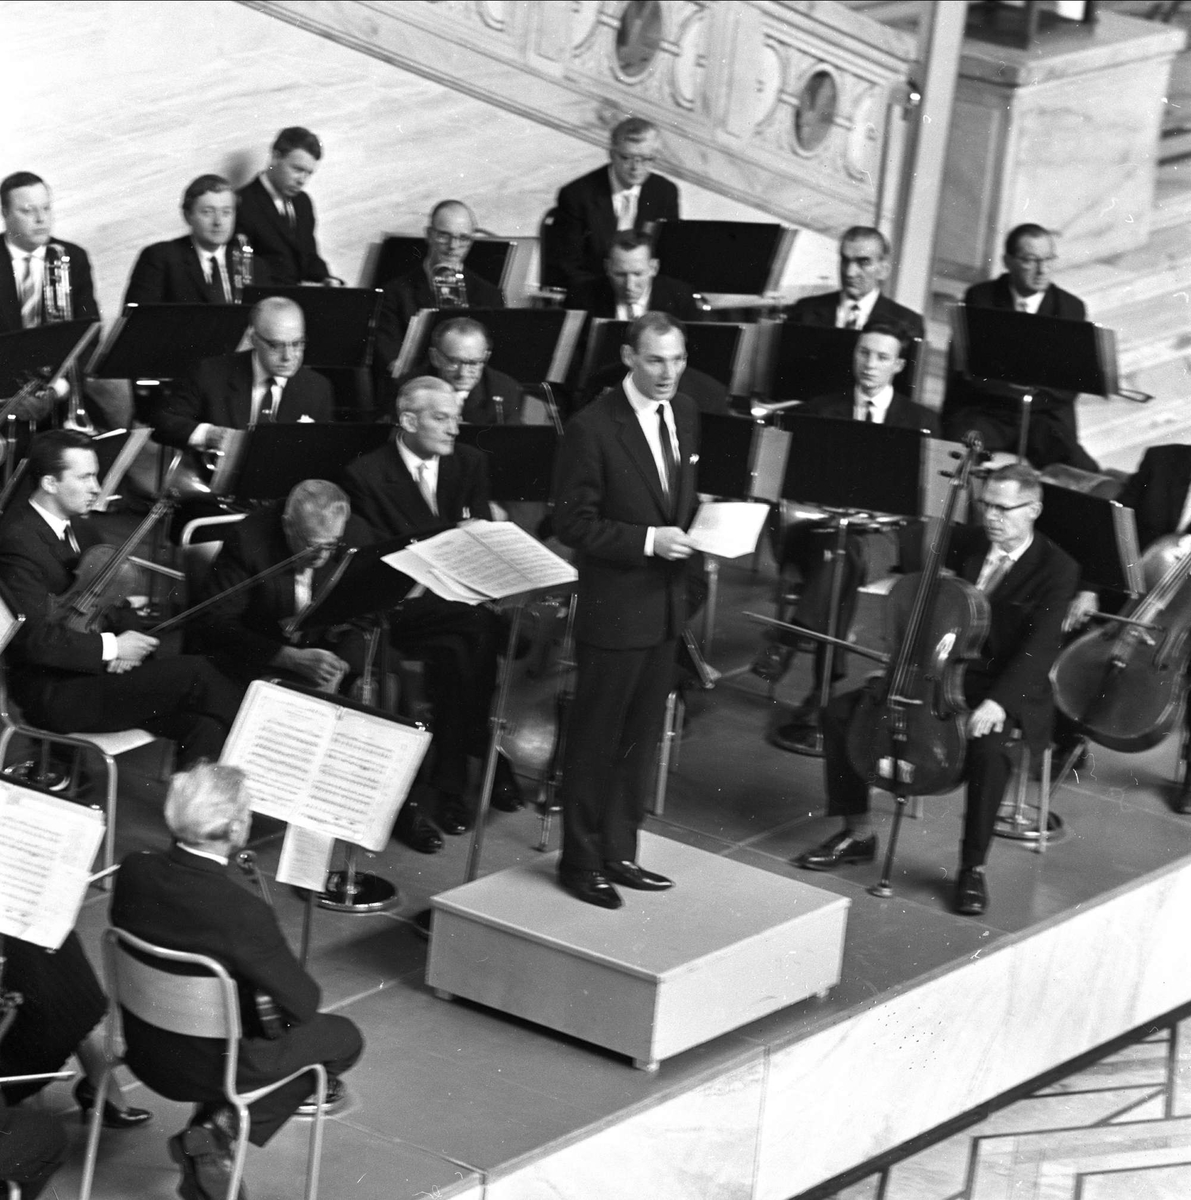 Rådhusplassen 1, Oslo, mai 1963. Rådhuset. Borgerlig konfirmasjon. Orkester.